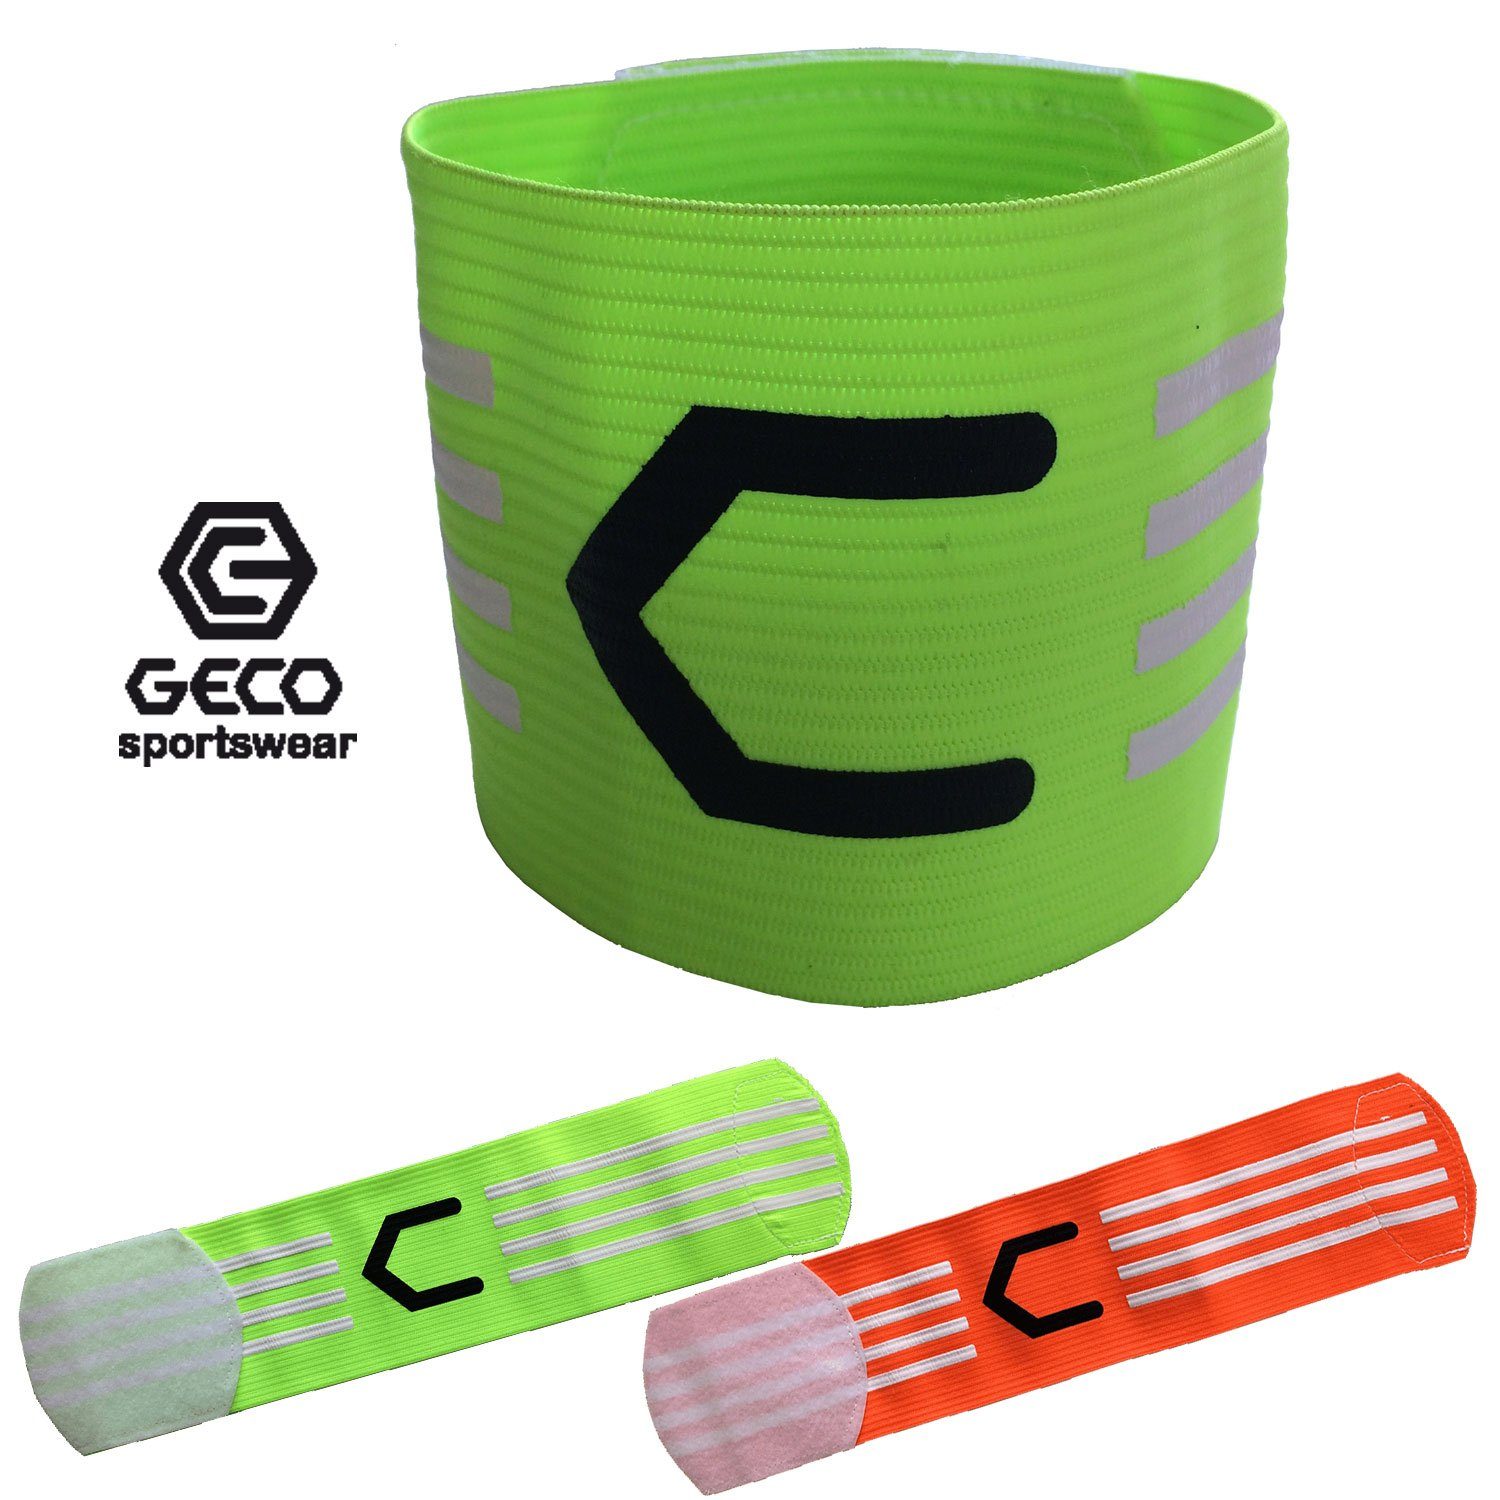 Geco Sportswear Kapitänsbinde und grün neon NEON grün Kapitänsbinde orange Farben Fußball Geco oder orange